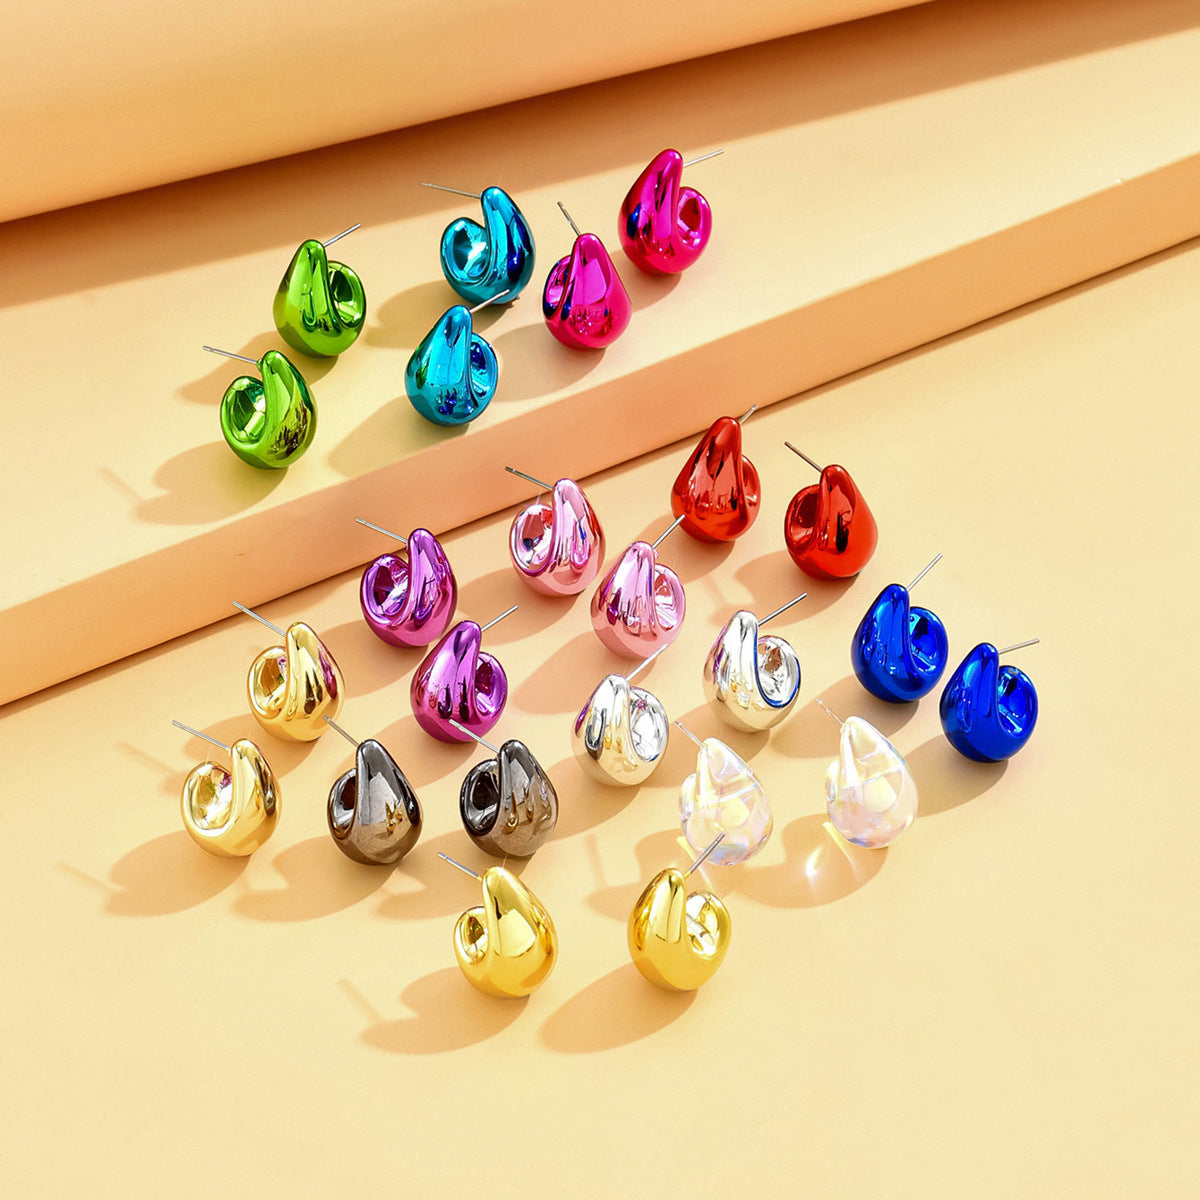 Fashion σκουλαρίκια σταγόνες σε διάφορα χρώματα από ακρυλικό